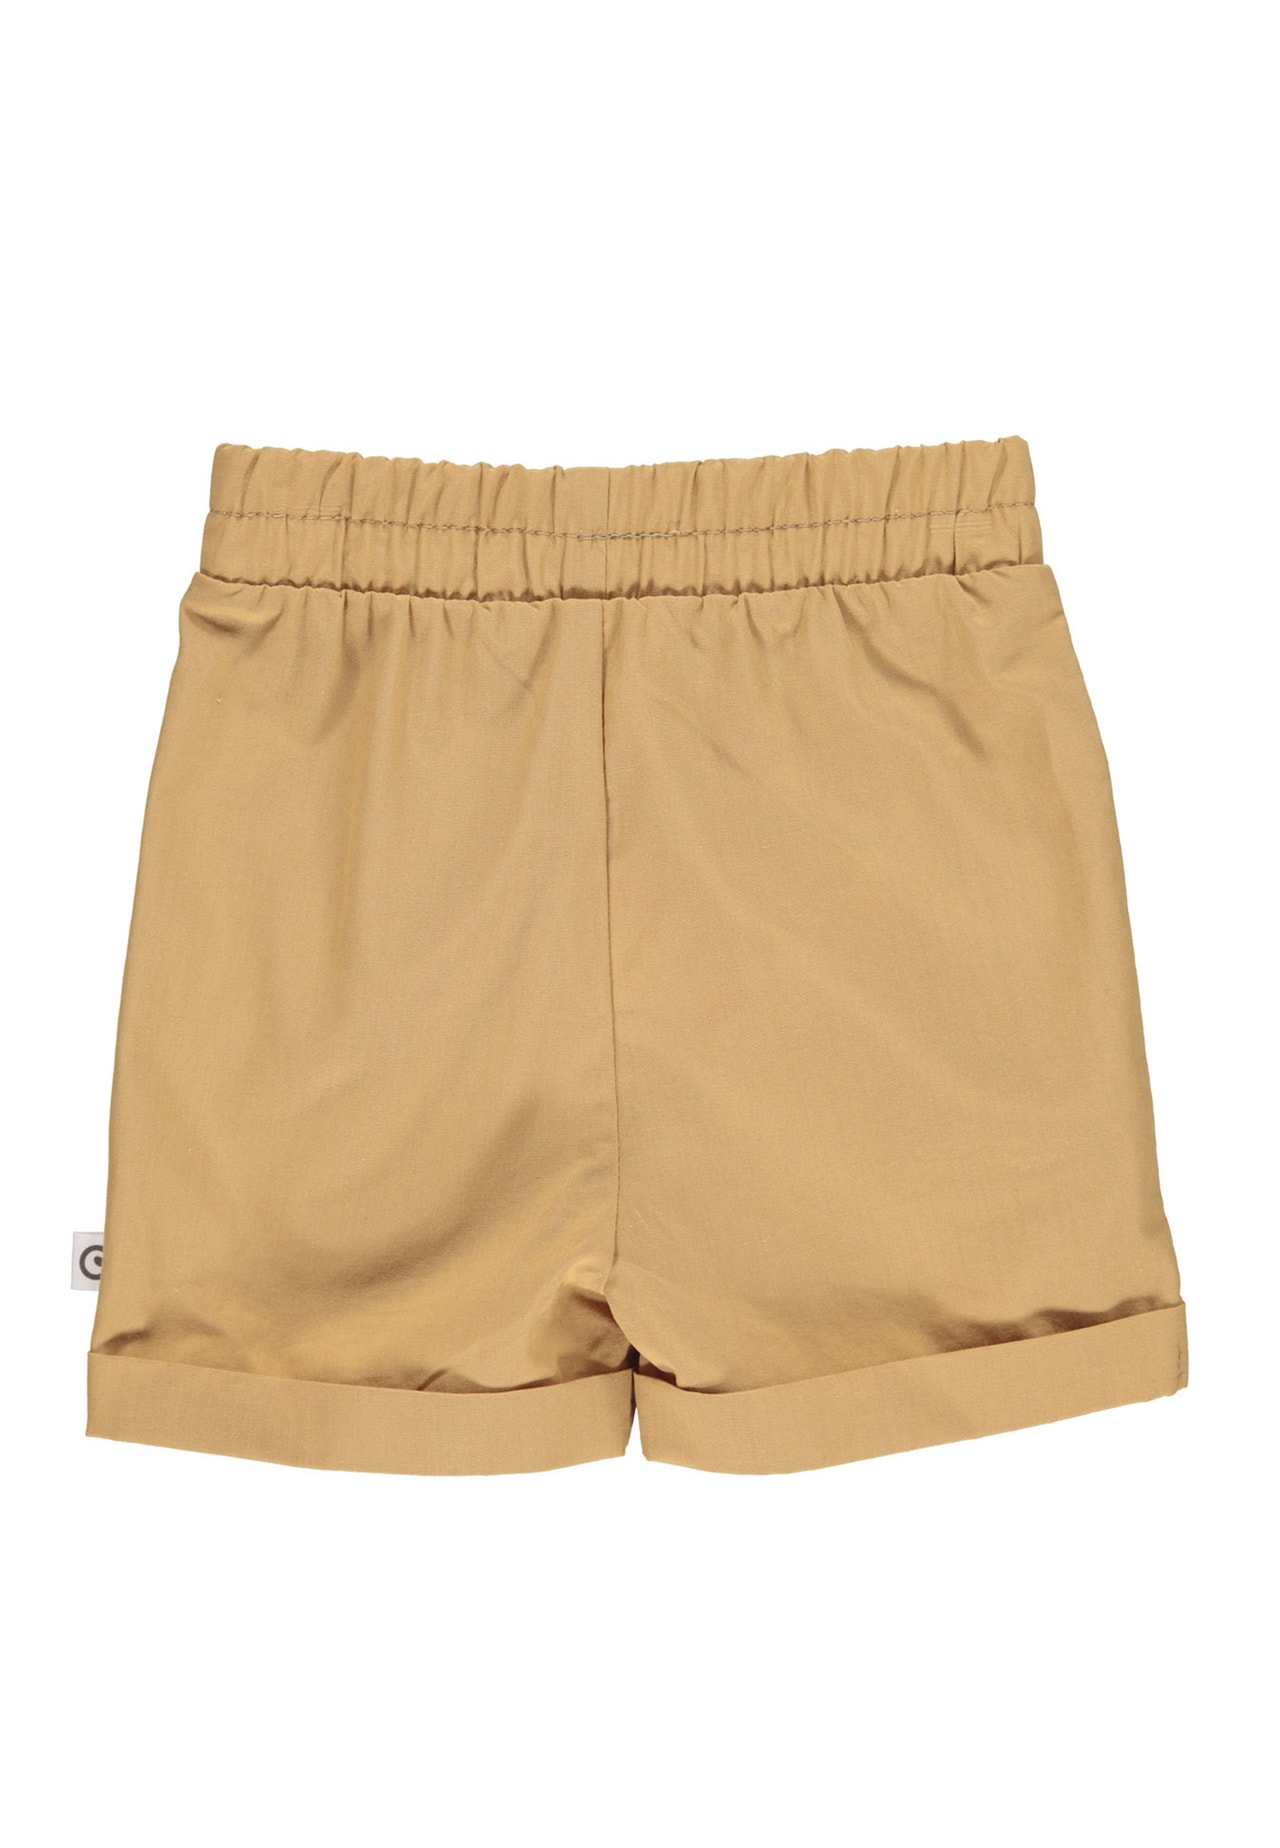 MAMA.LICIOUS müsli Poplin shorts  -Cinnamon - 1532005900